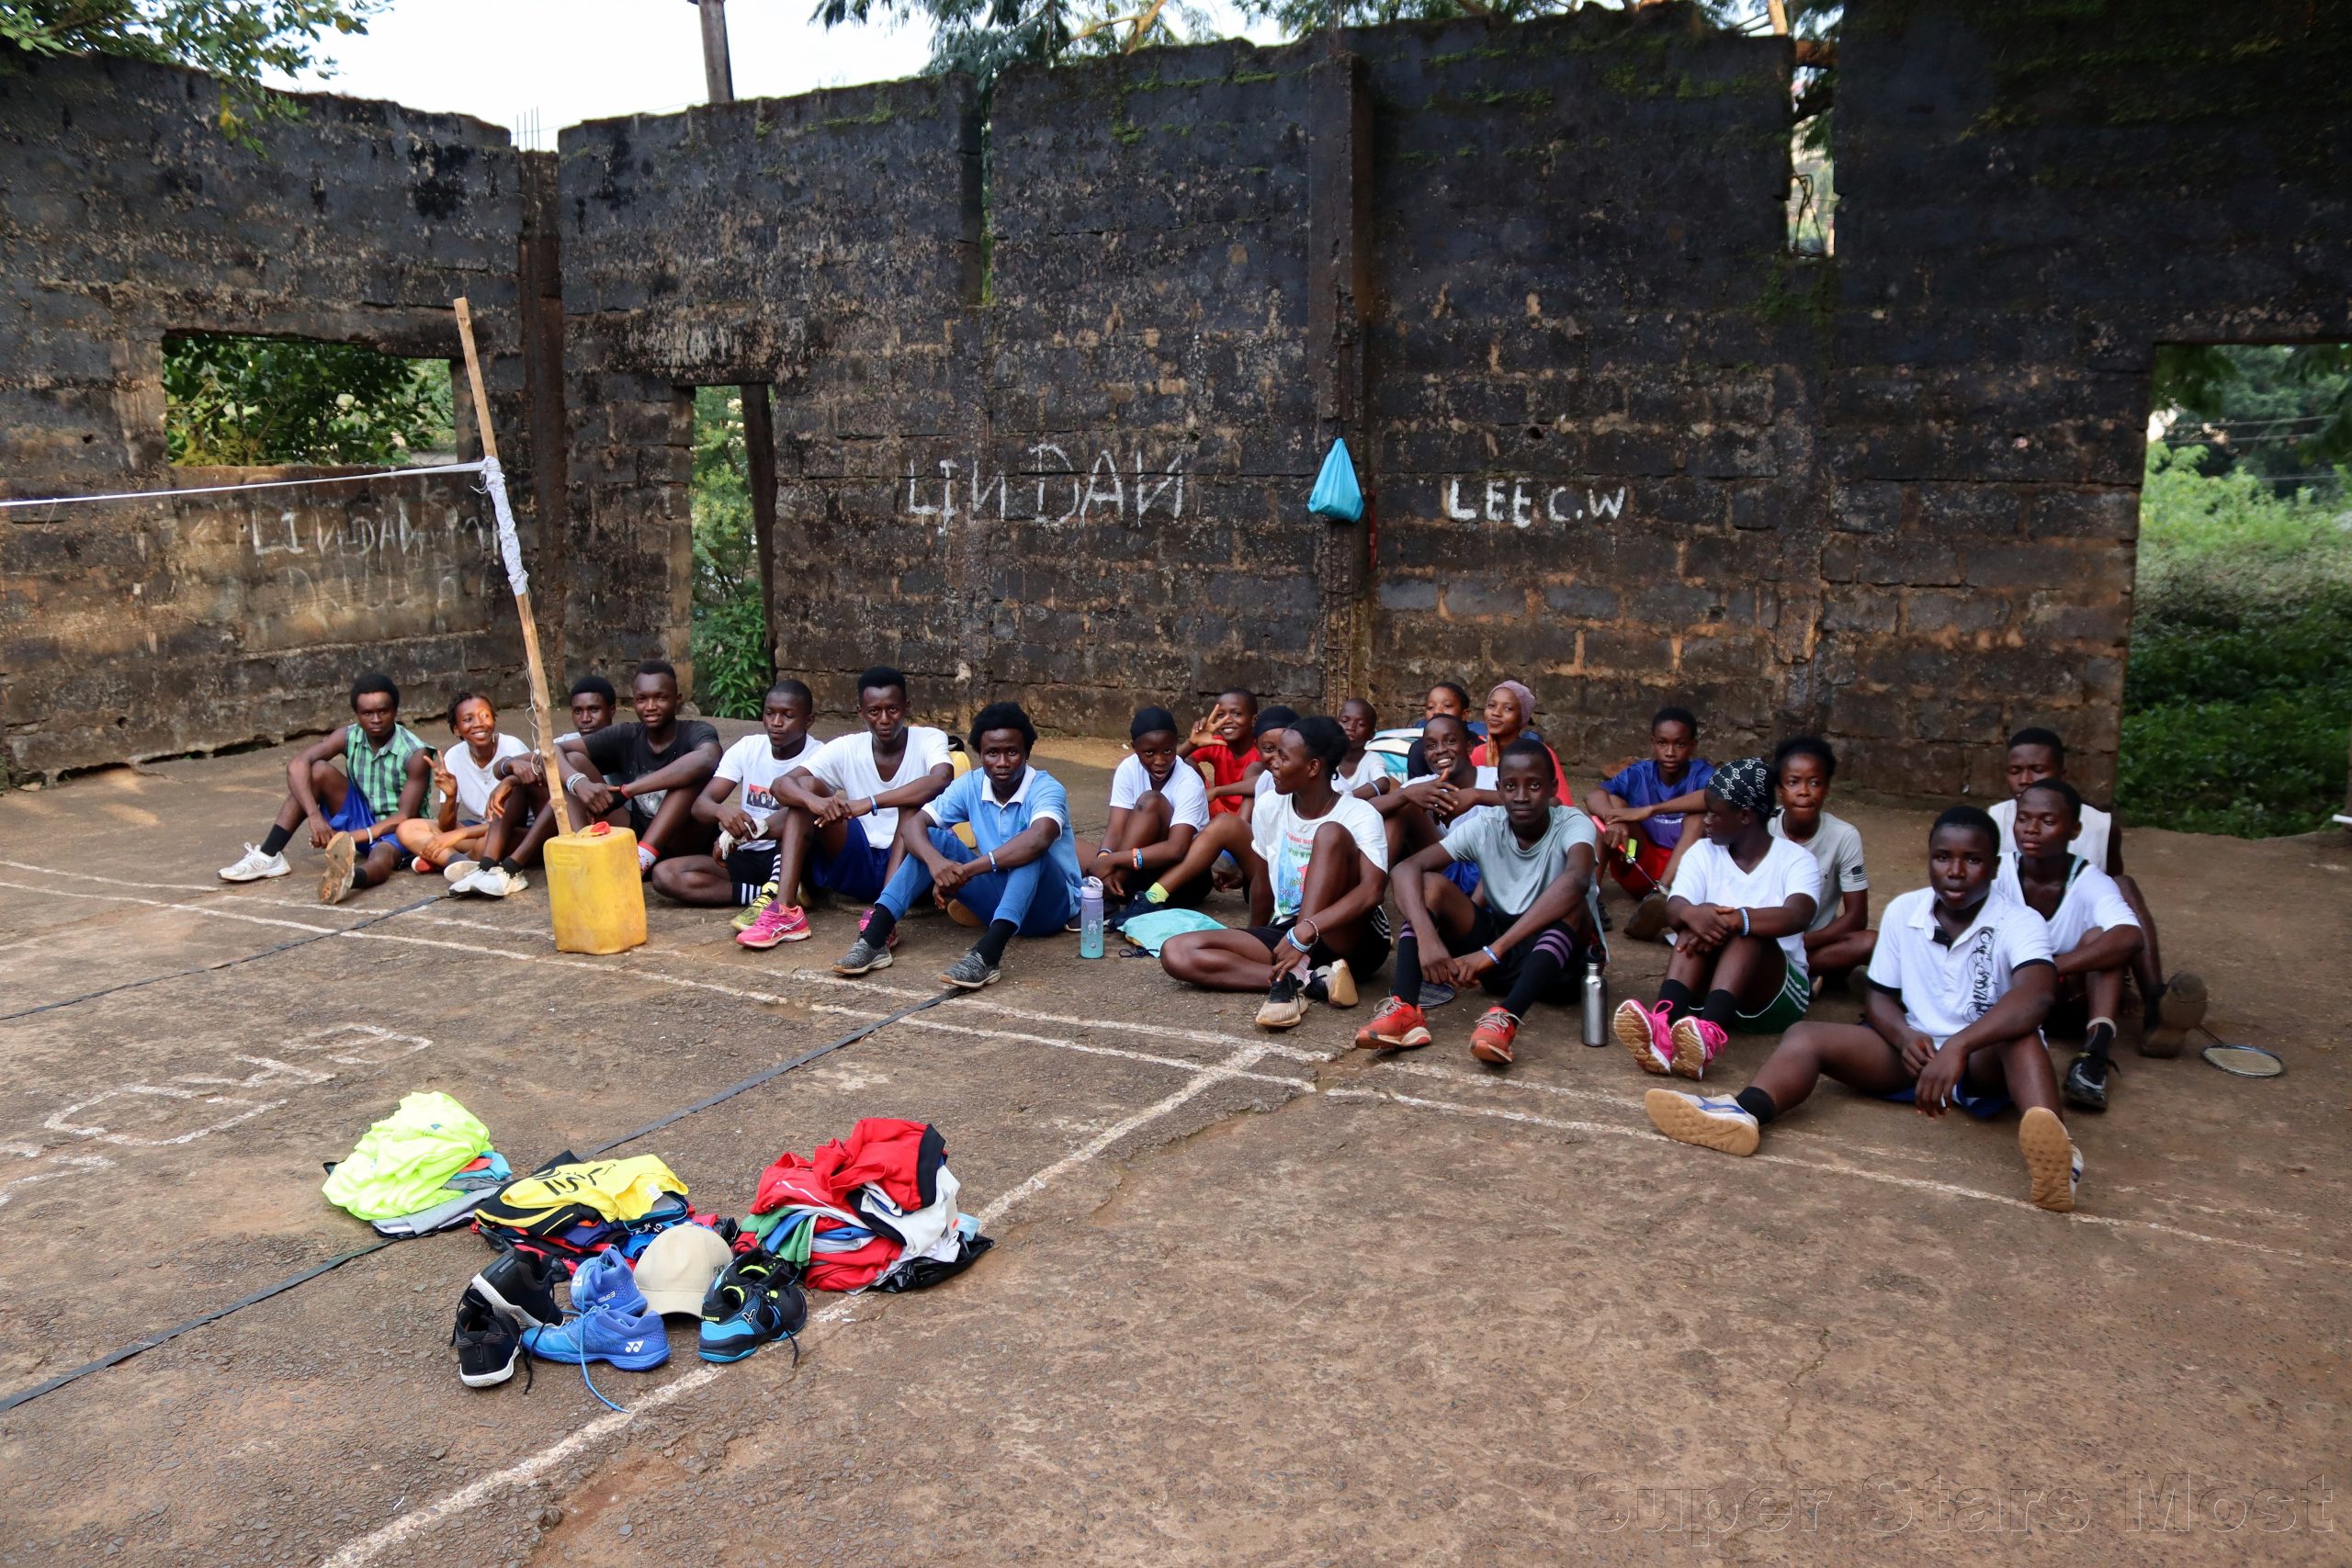 Přečtete si více ze článku Mostečtí badmintonisté se zapojili do materiální sbírky pro Afriku